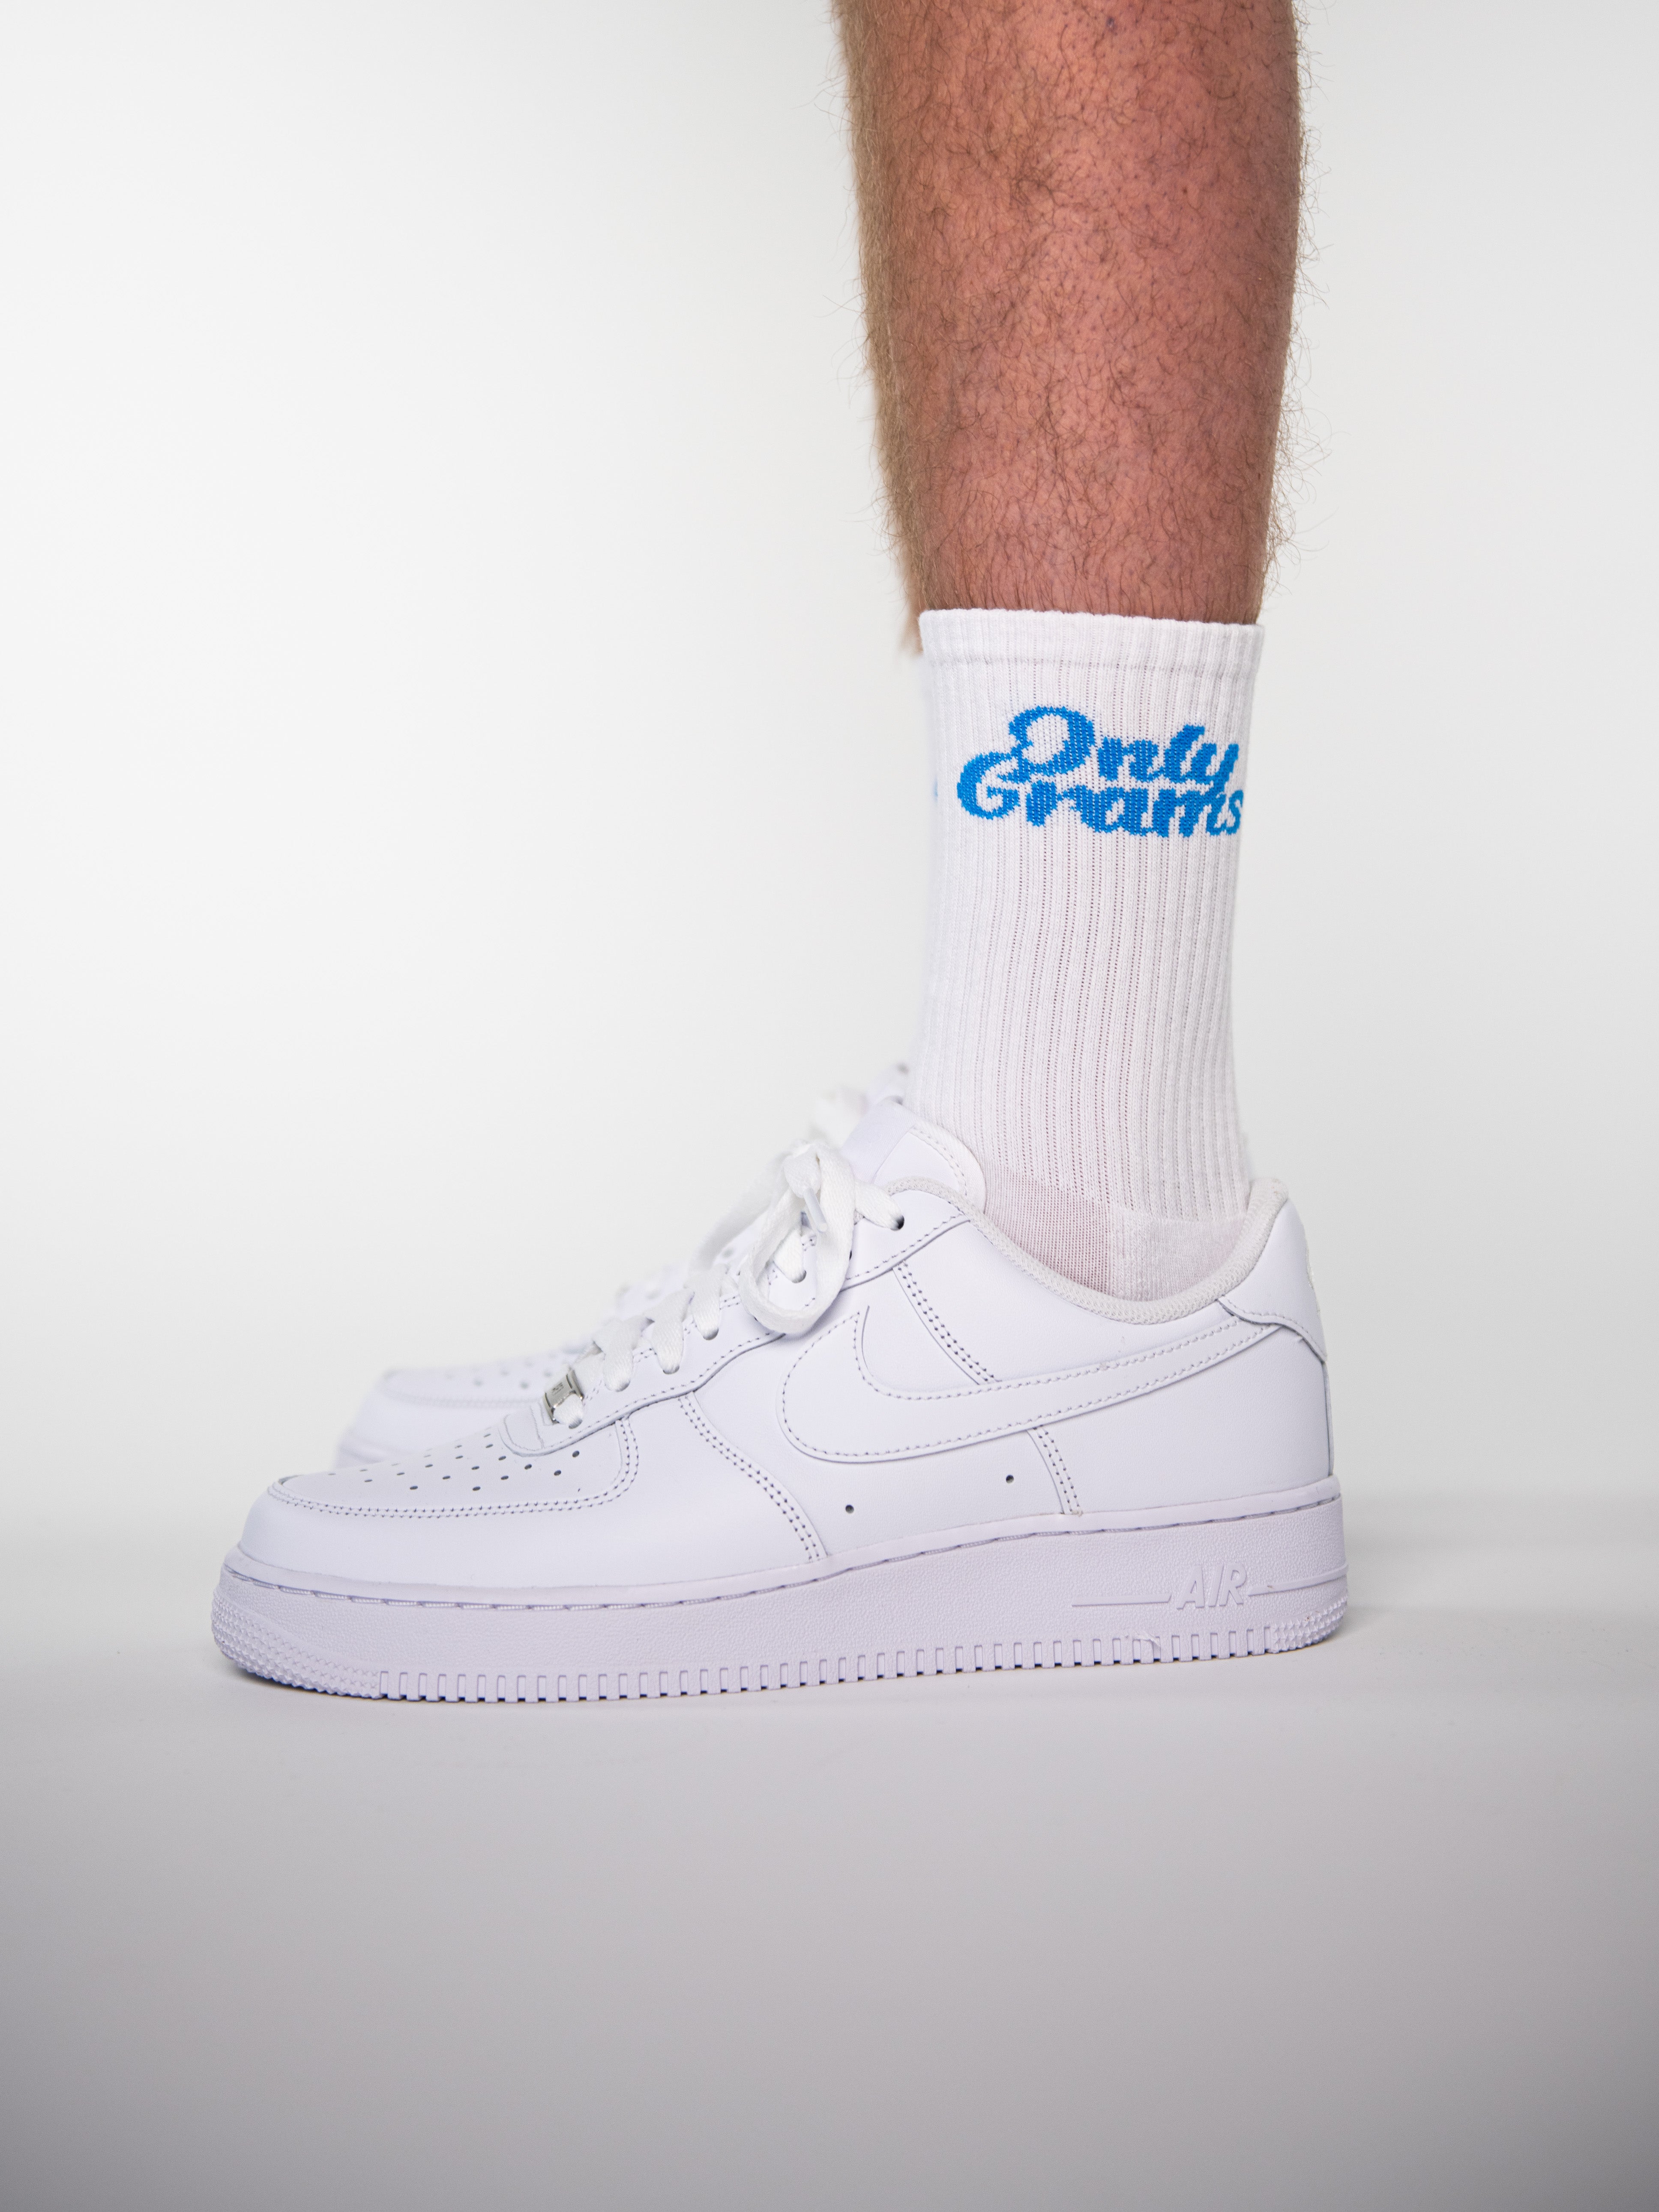 OnlyGrams Socks White